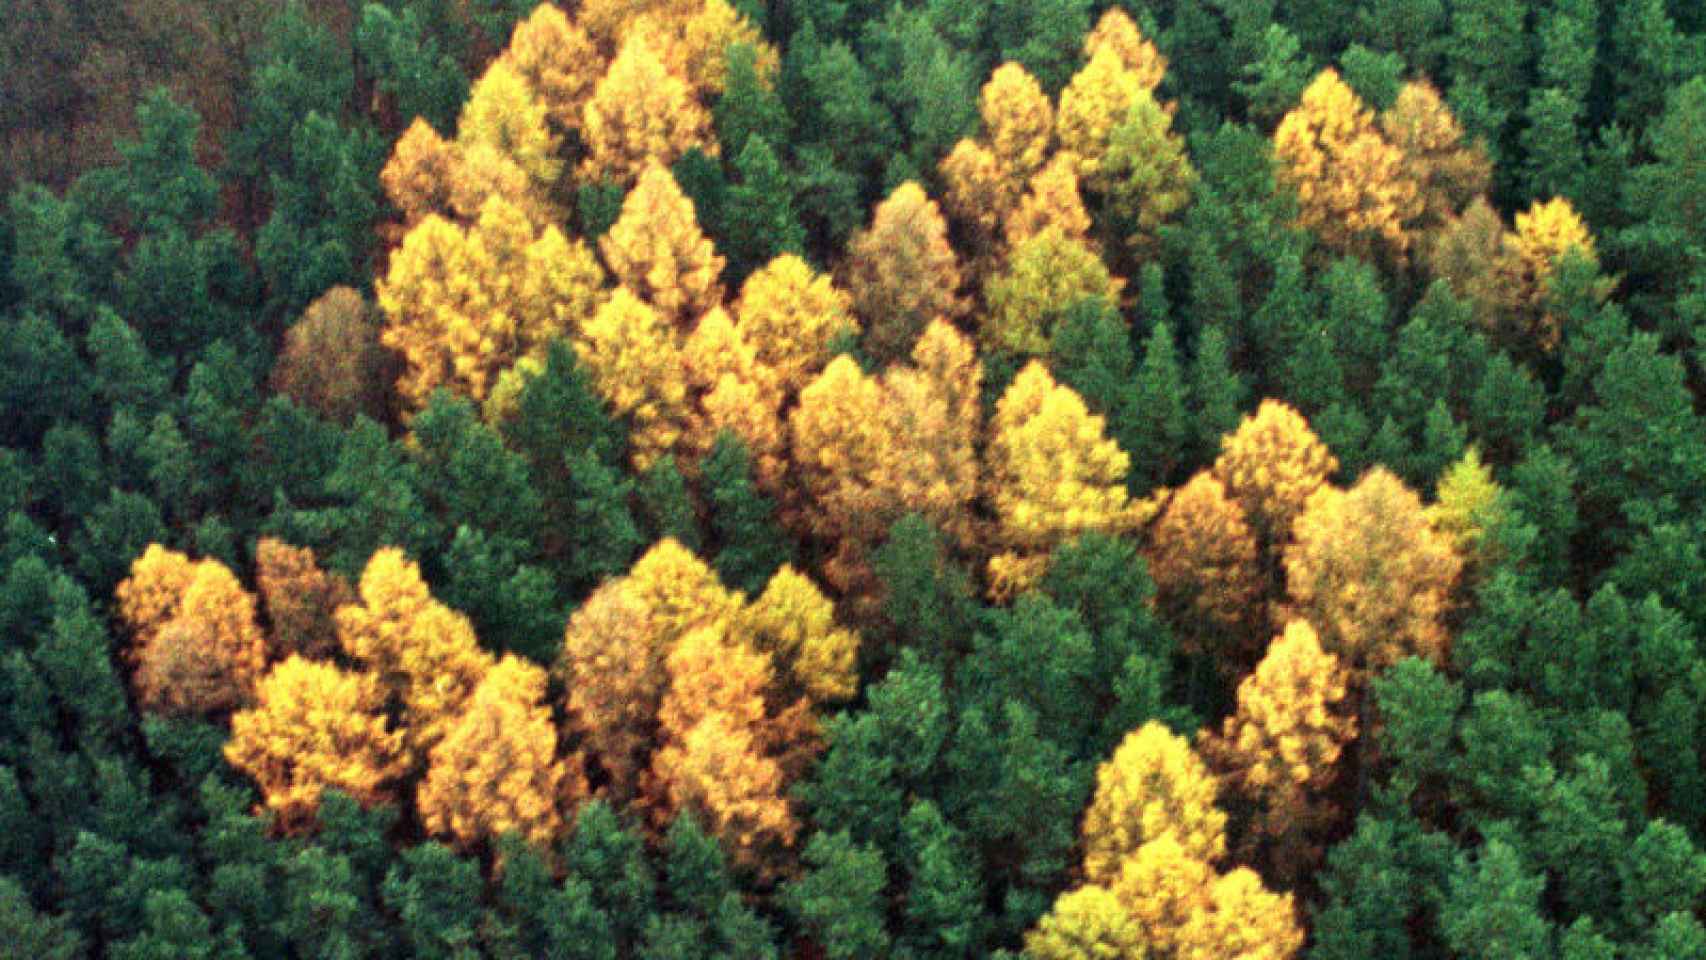 Fotografía aérea del 'Bosque Esvástica', donde se observan árboles plantados en forma del símbolo nazi en honor a Adolf Hitler en la década de los treinta.